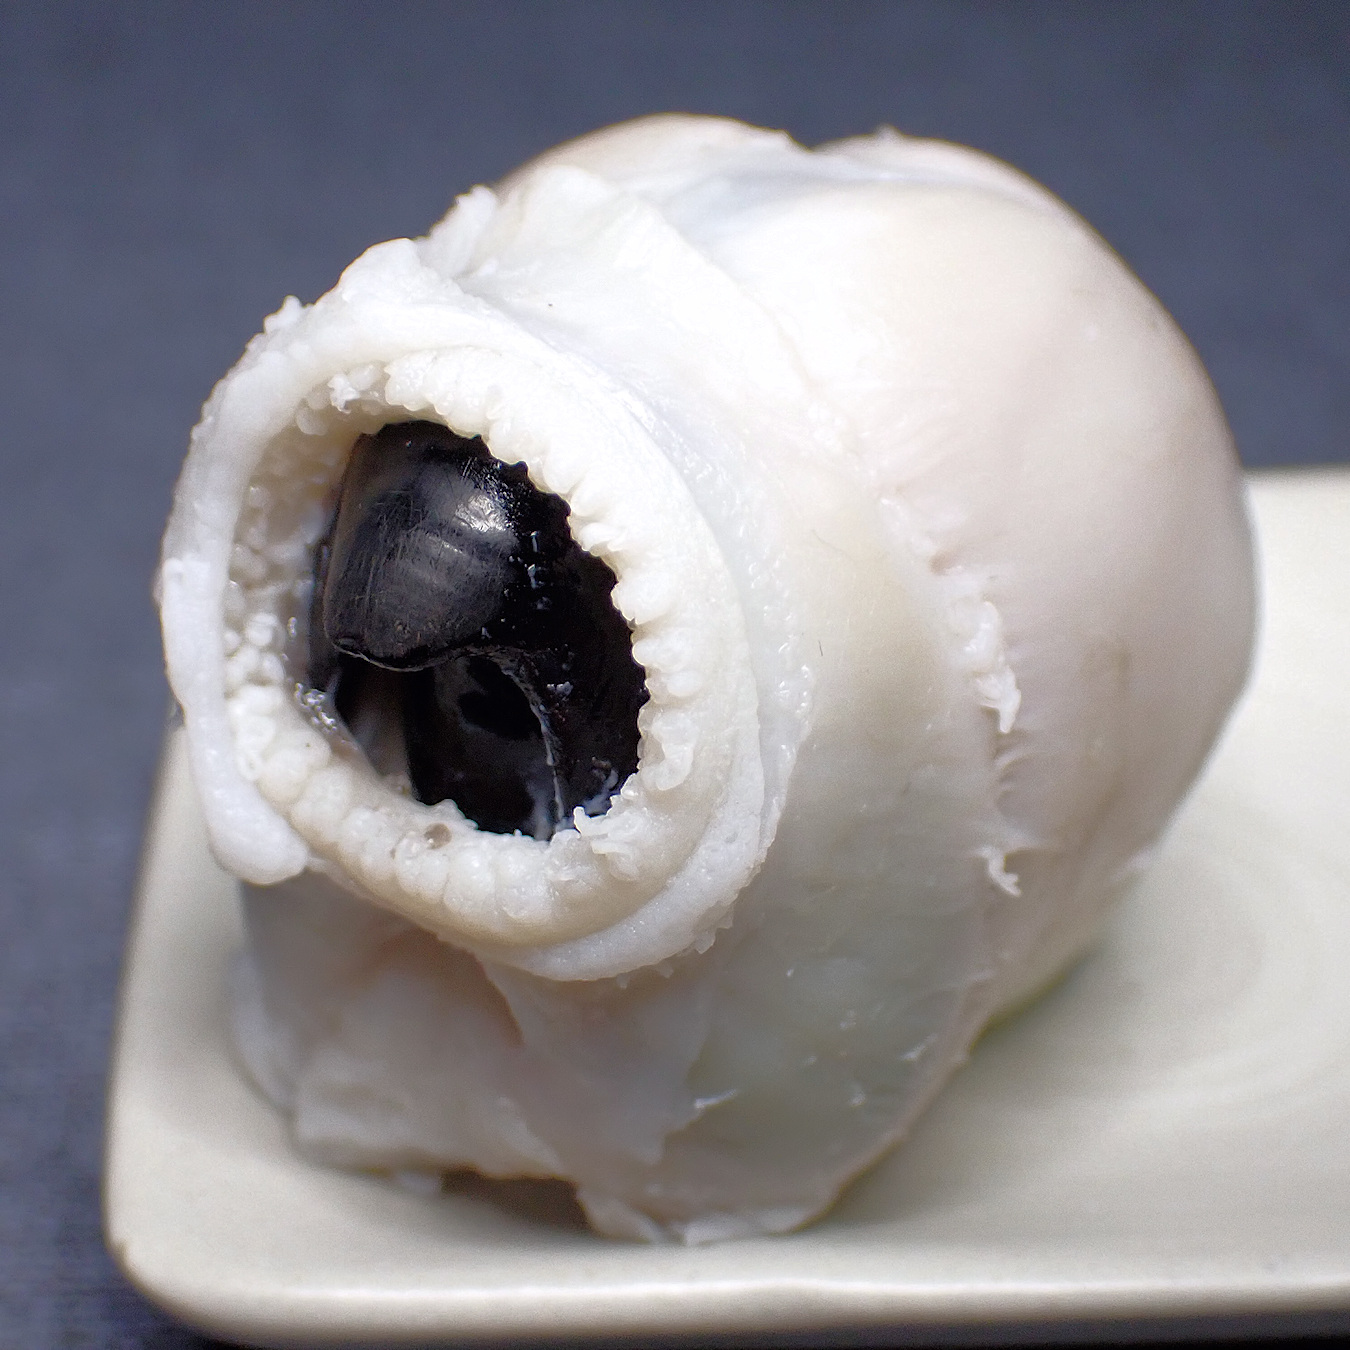 ぁぃの飼育ブログ Persona タコのカラストンビ これはミズダコの口 足などといっしょに塩ゆでされたもので 周囲の肉を食べます カラストンビの大きさもかなり大きい次第 歯舌にはトゲがあります 詳細記事 T Co Pq9b6uz0bt タコ